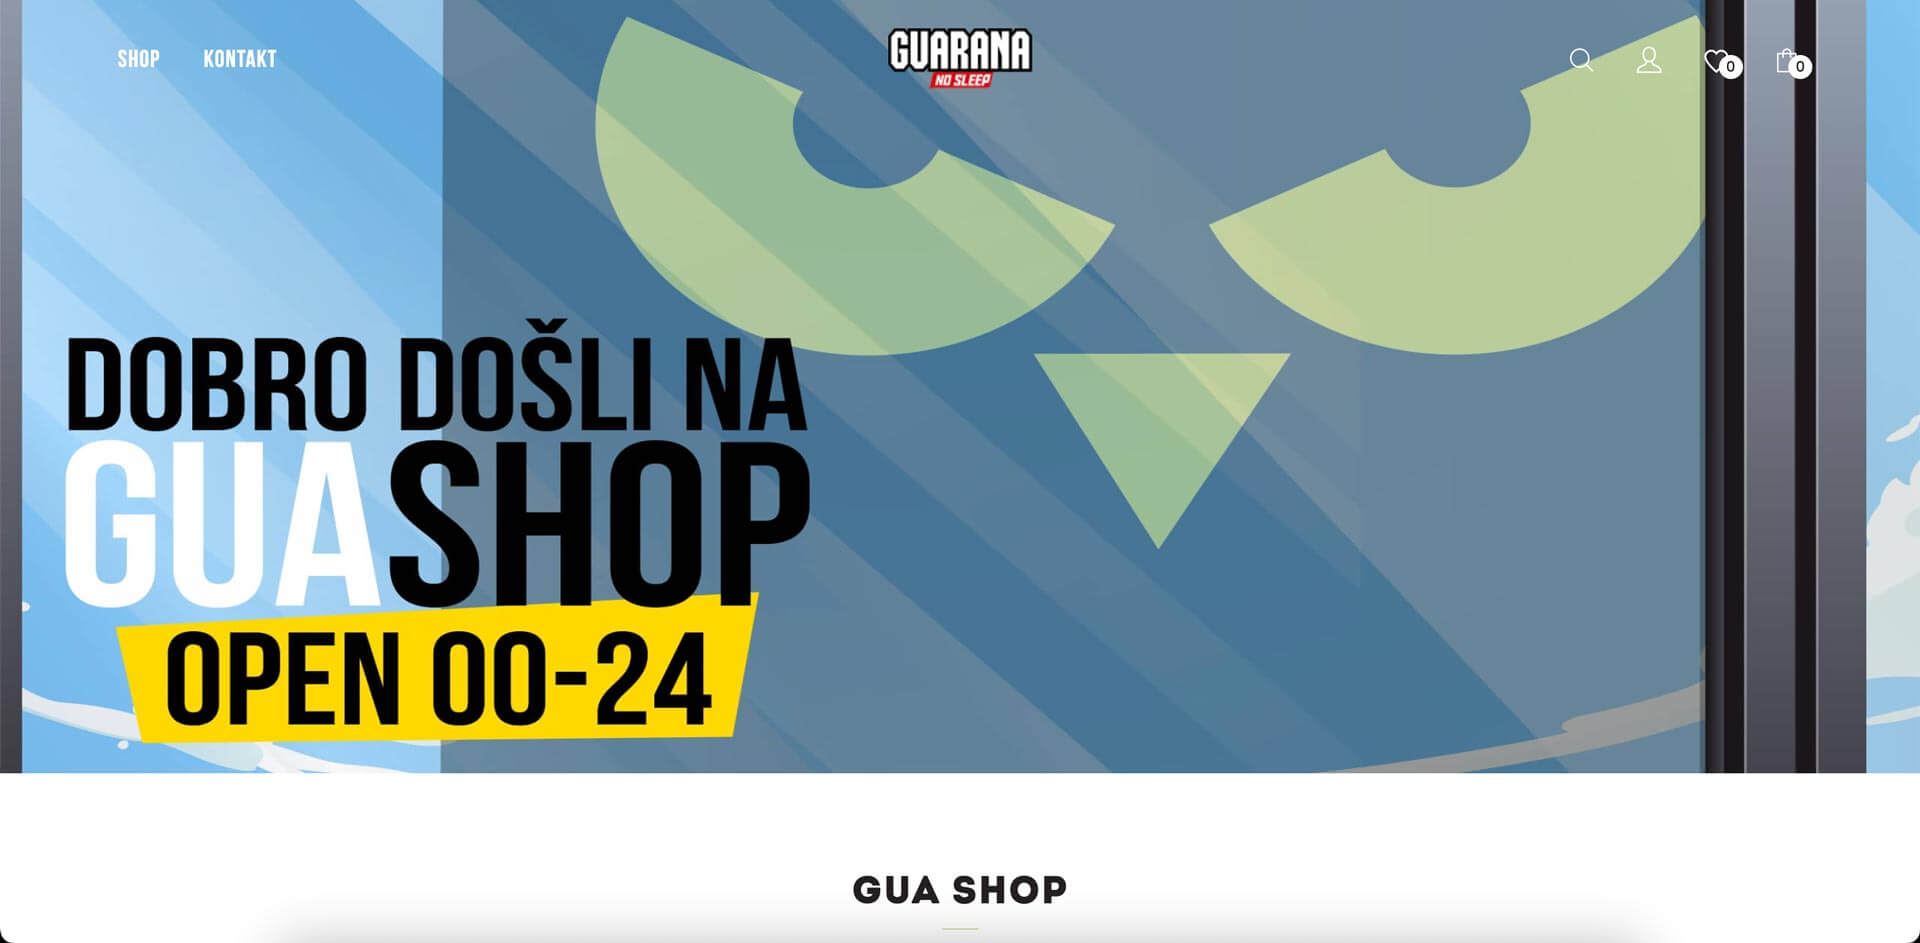 Guarana Shop